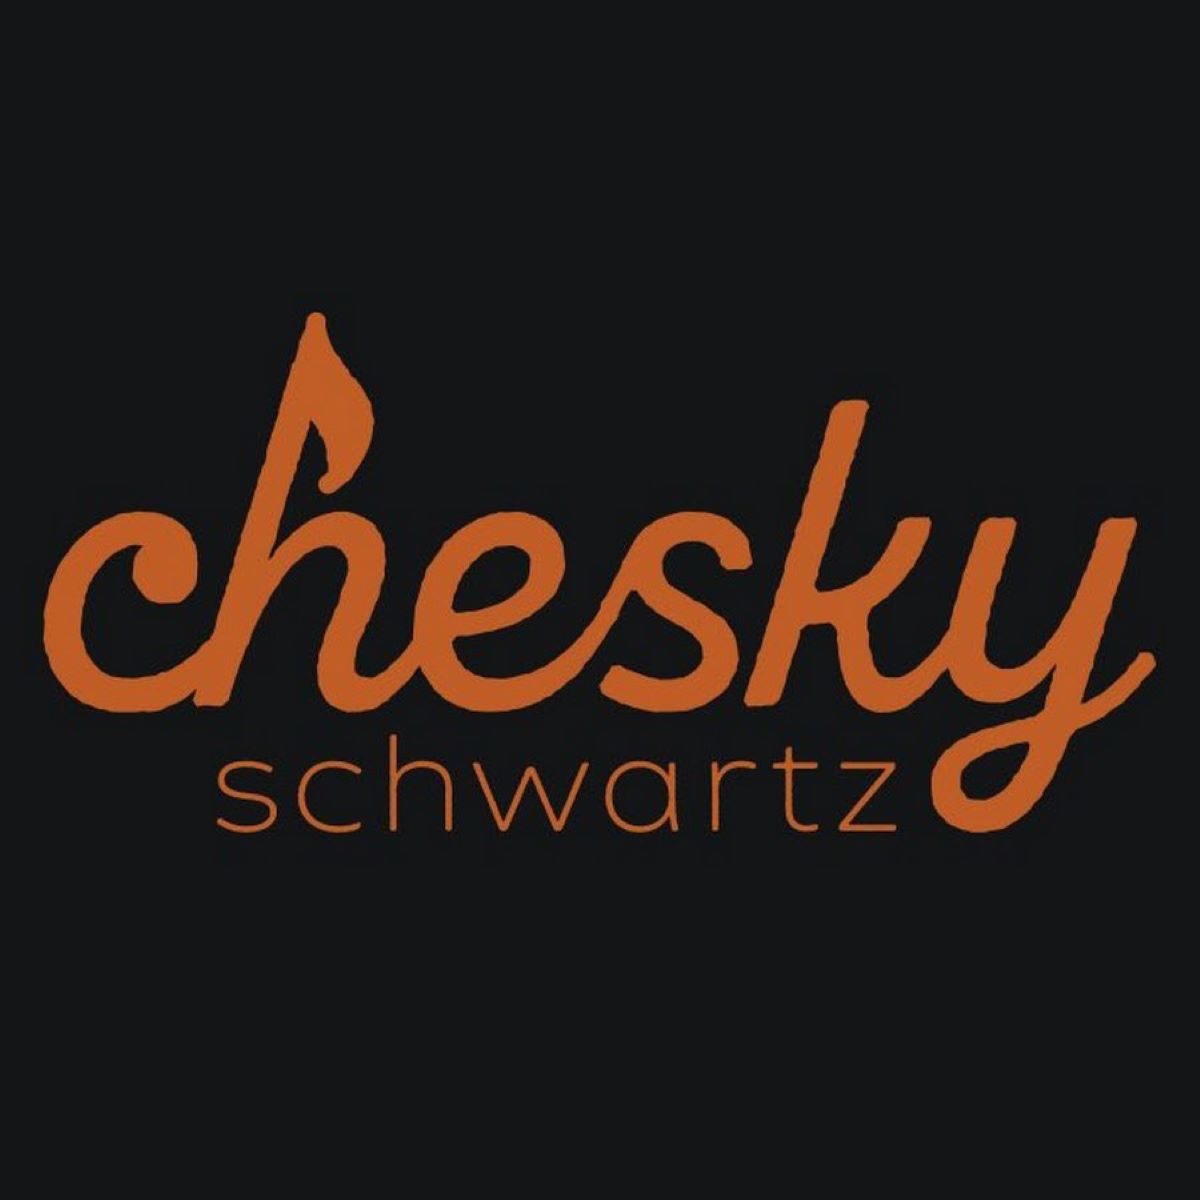 Suscher Guttman & Chesky Schwartz Production - Feb. 3 '22 Lunger (Wedding)